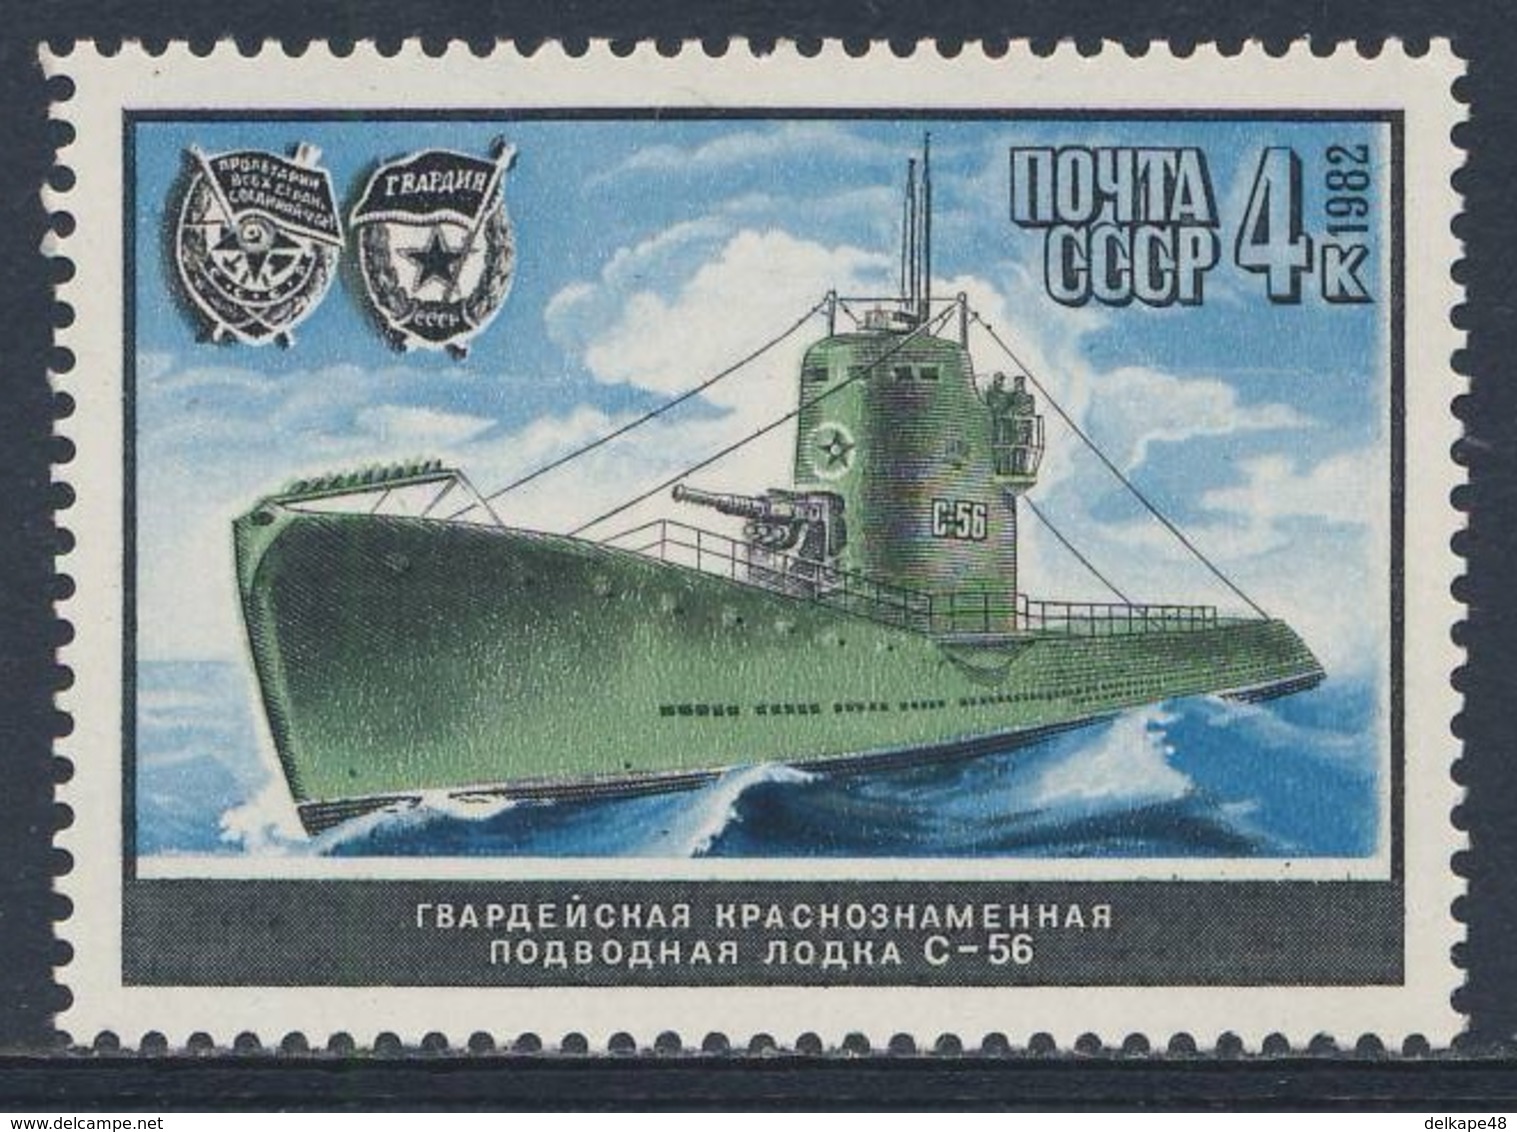 Soviet Unie CCCP Russia 1982 Mi 5216 YT 4945 SG 5270 ** Submarine "S-56", Soviet Naval Ship / Unterseeboot, Kriegsschiff - Duikboten